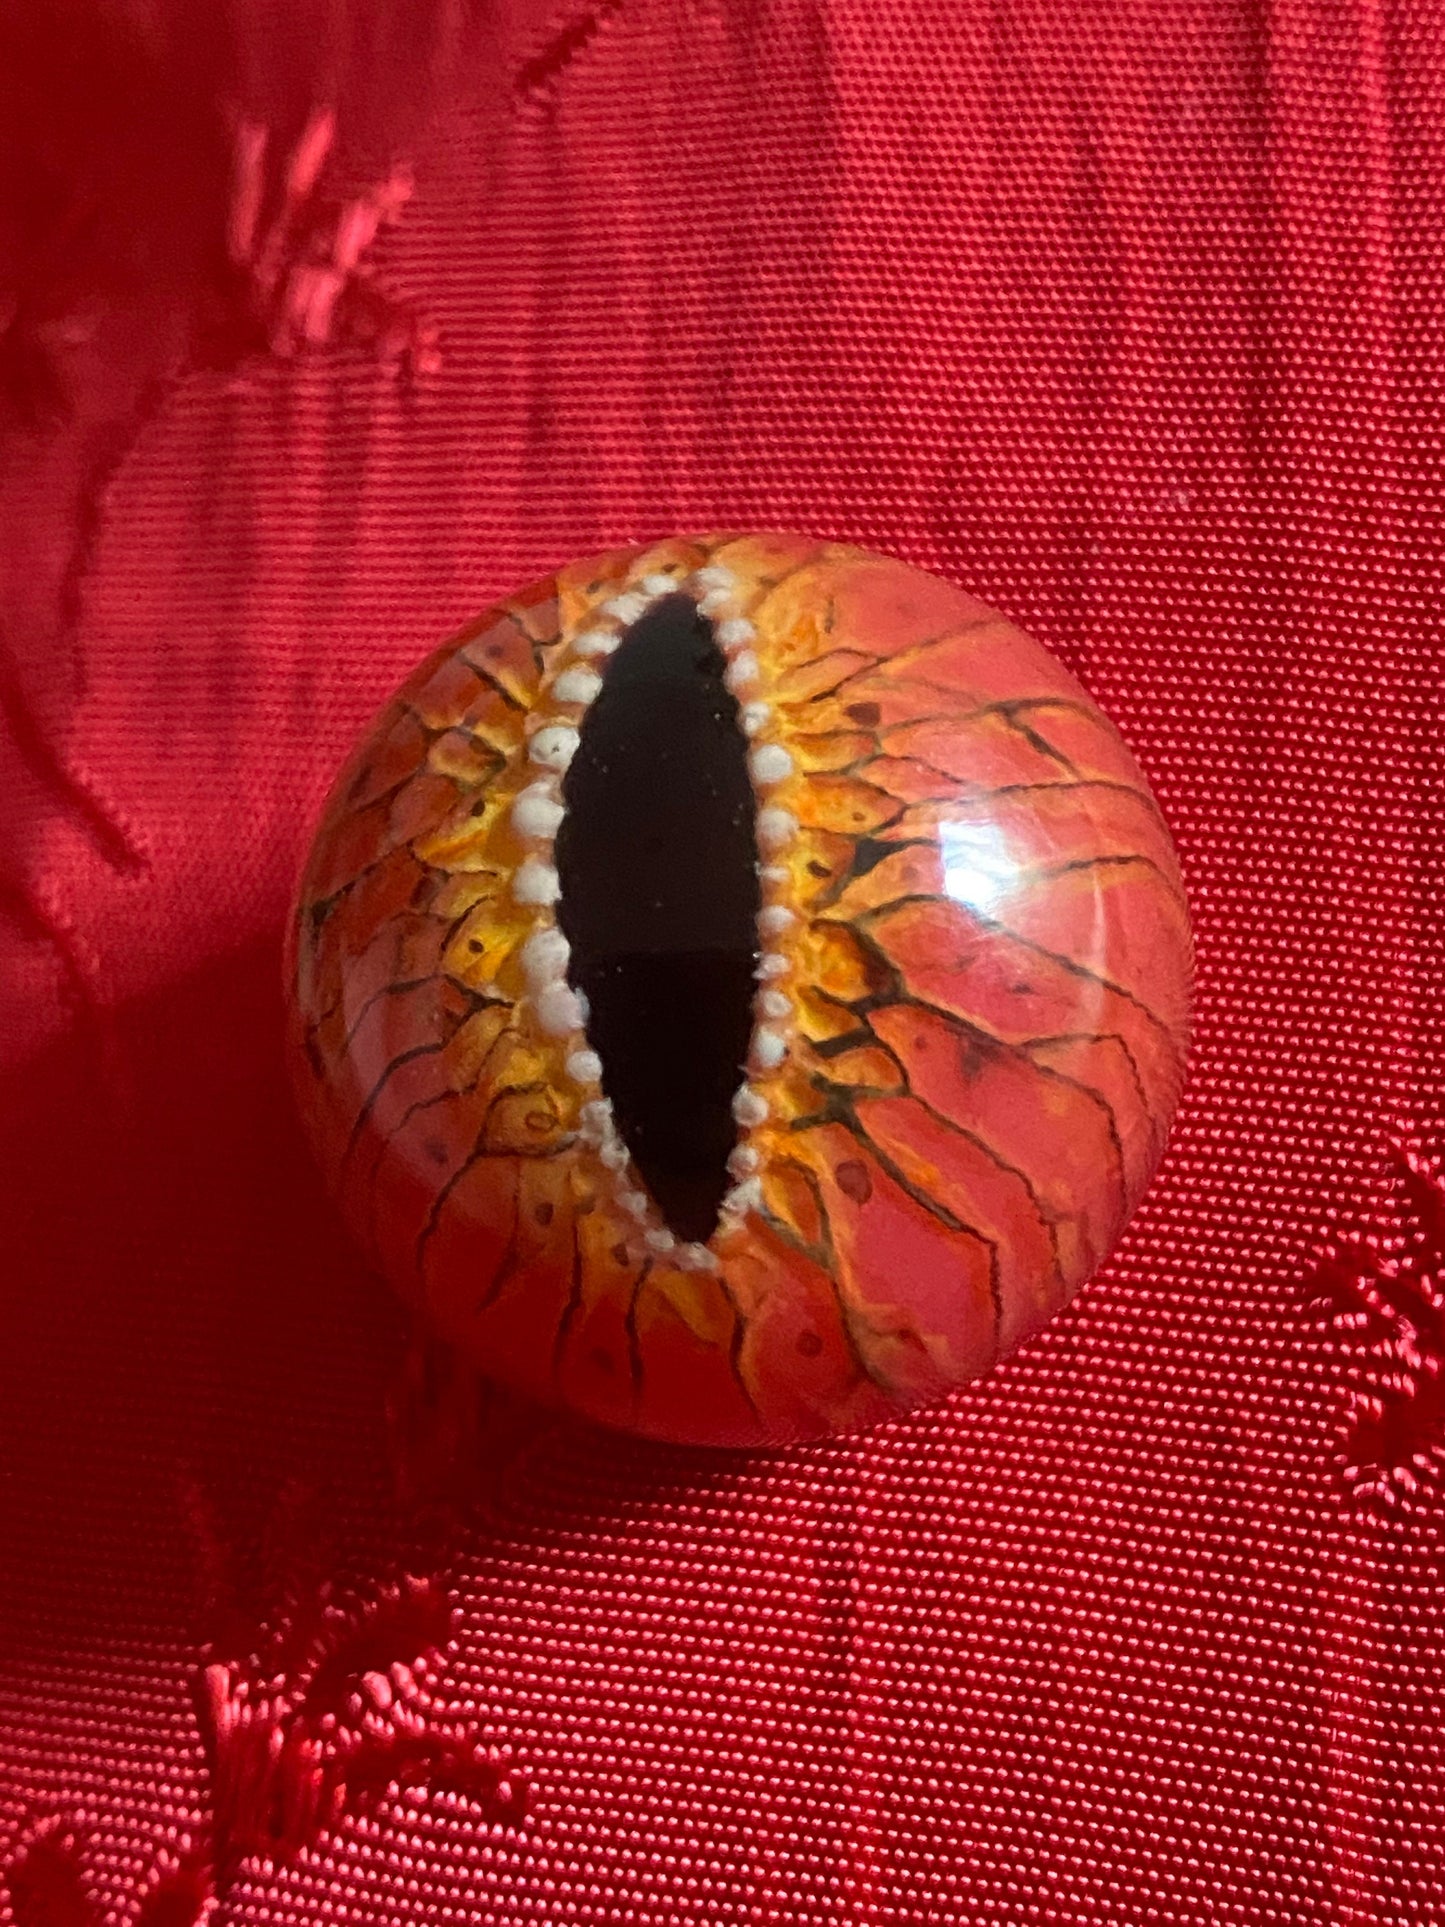 handmade gremlin eyeball